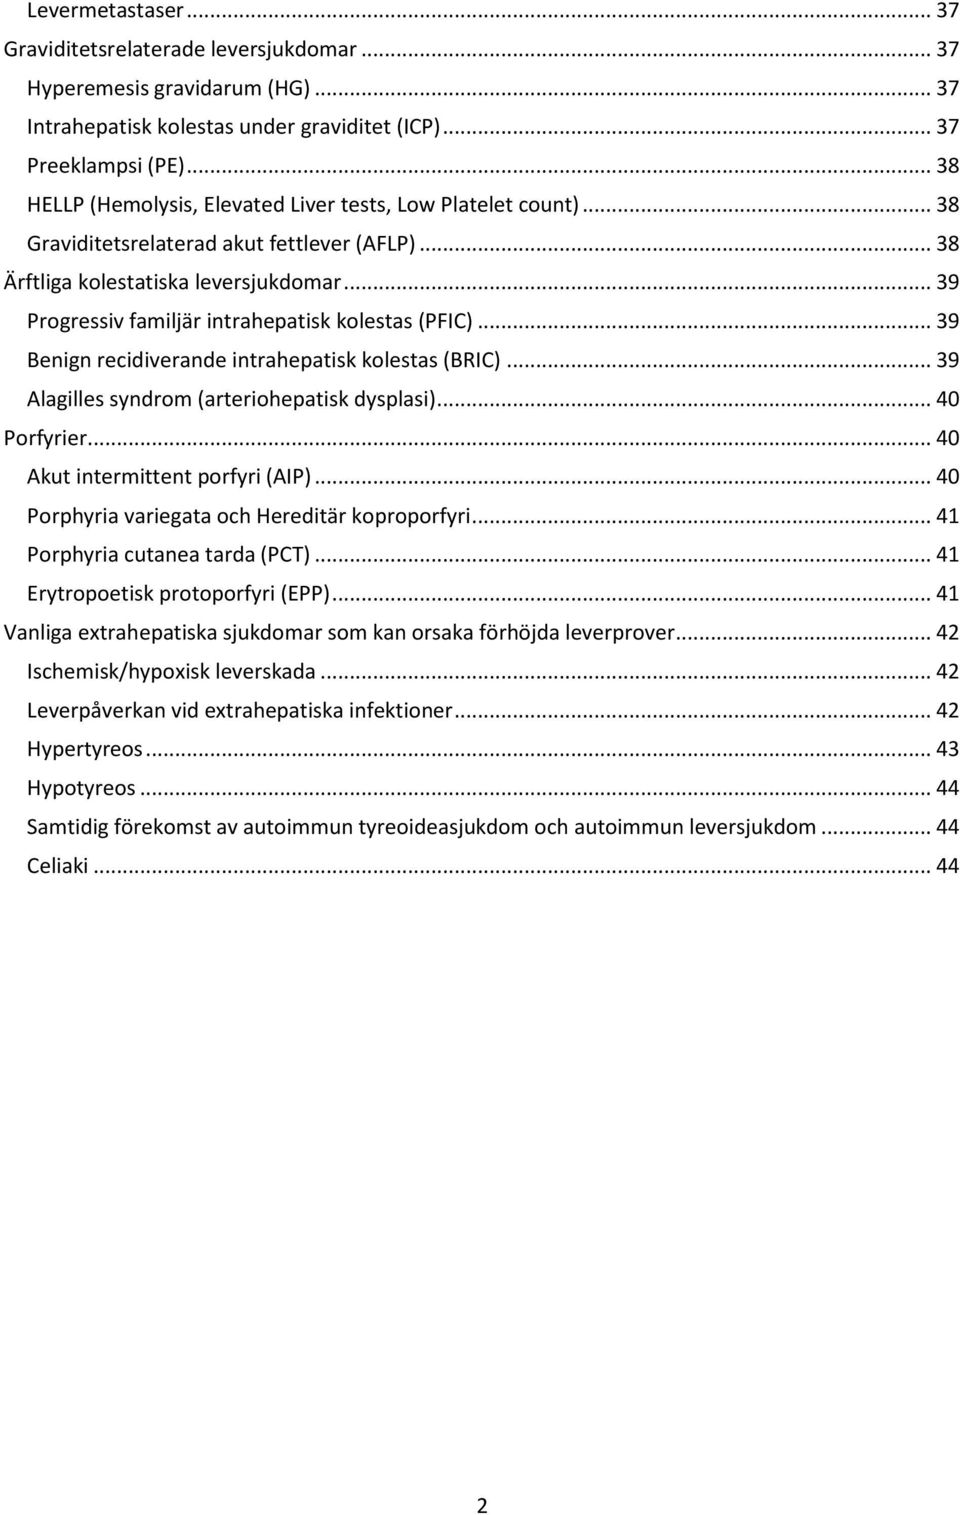 .. 39 Progressiv familjär intrahepatisk kolestas (PFIC)... 39 Benign recidiverande intrahepatisk kolestas (BRIC)... 39 Alagilles syndrom (arteriohepatisk dysplasi)... 40 Porfyrier.